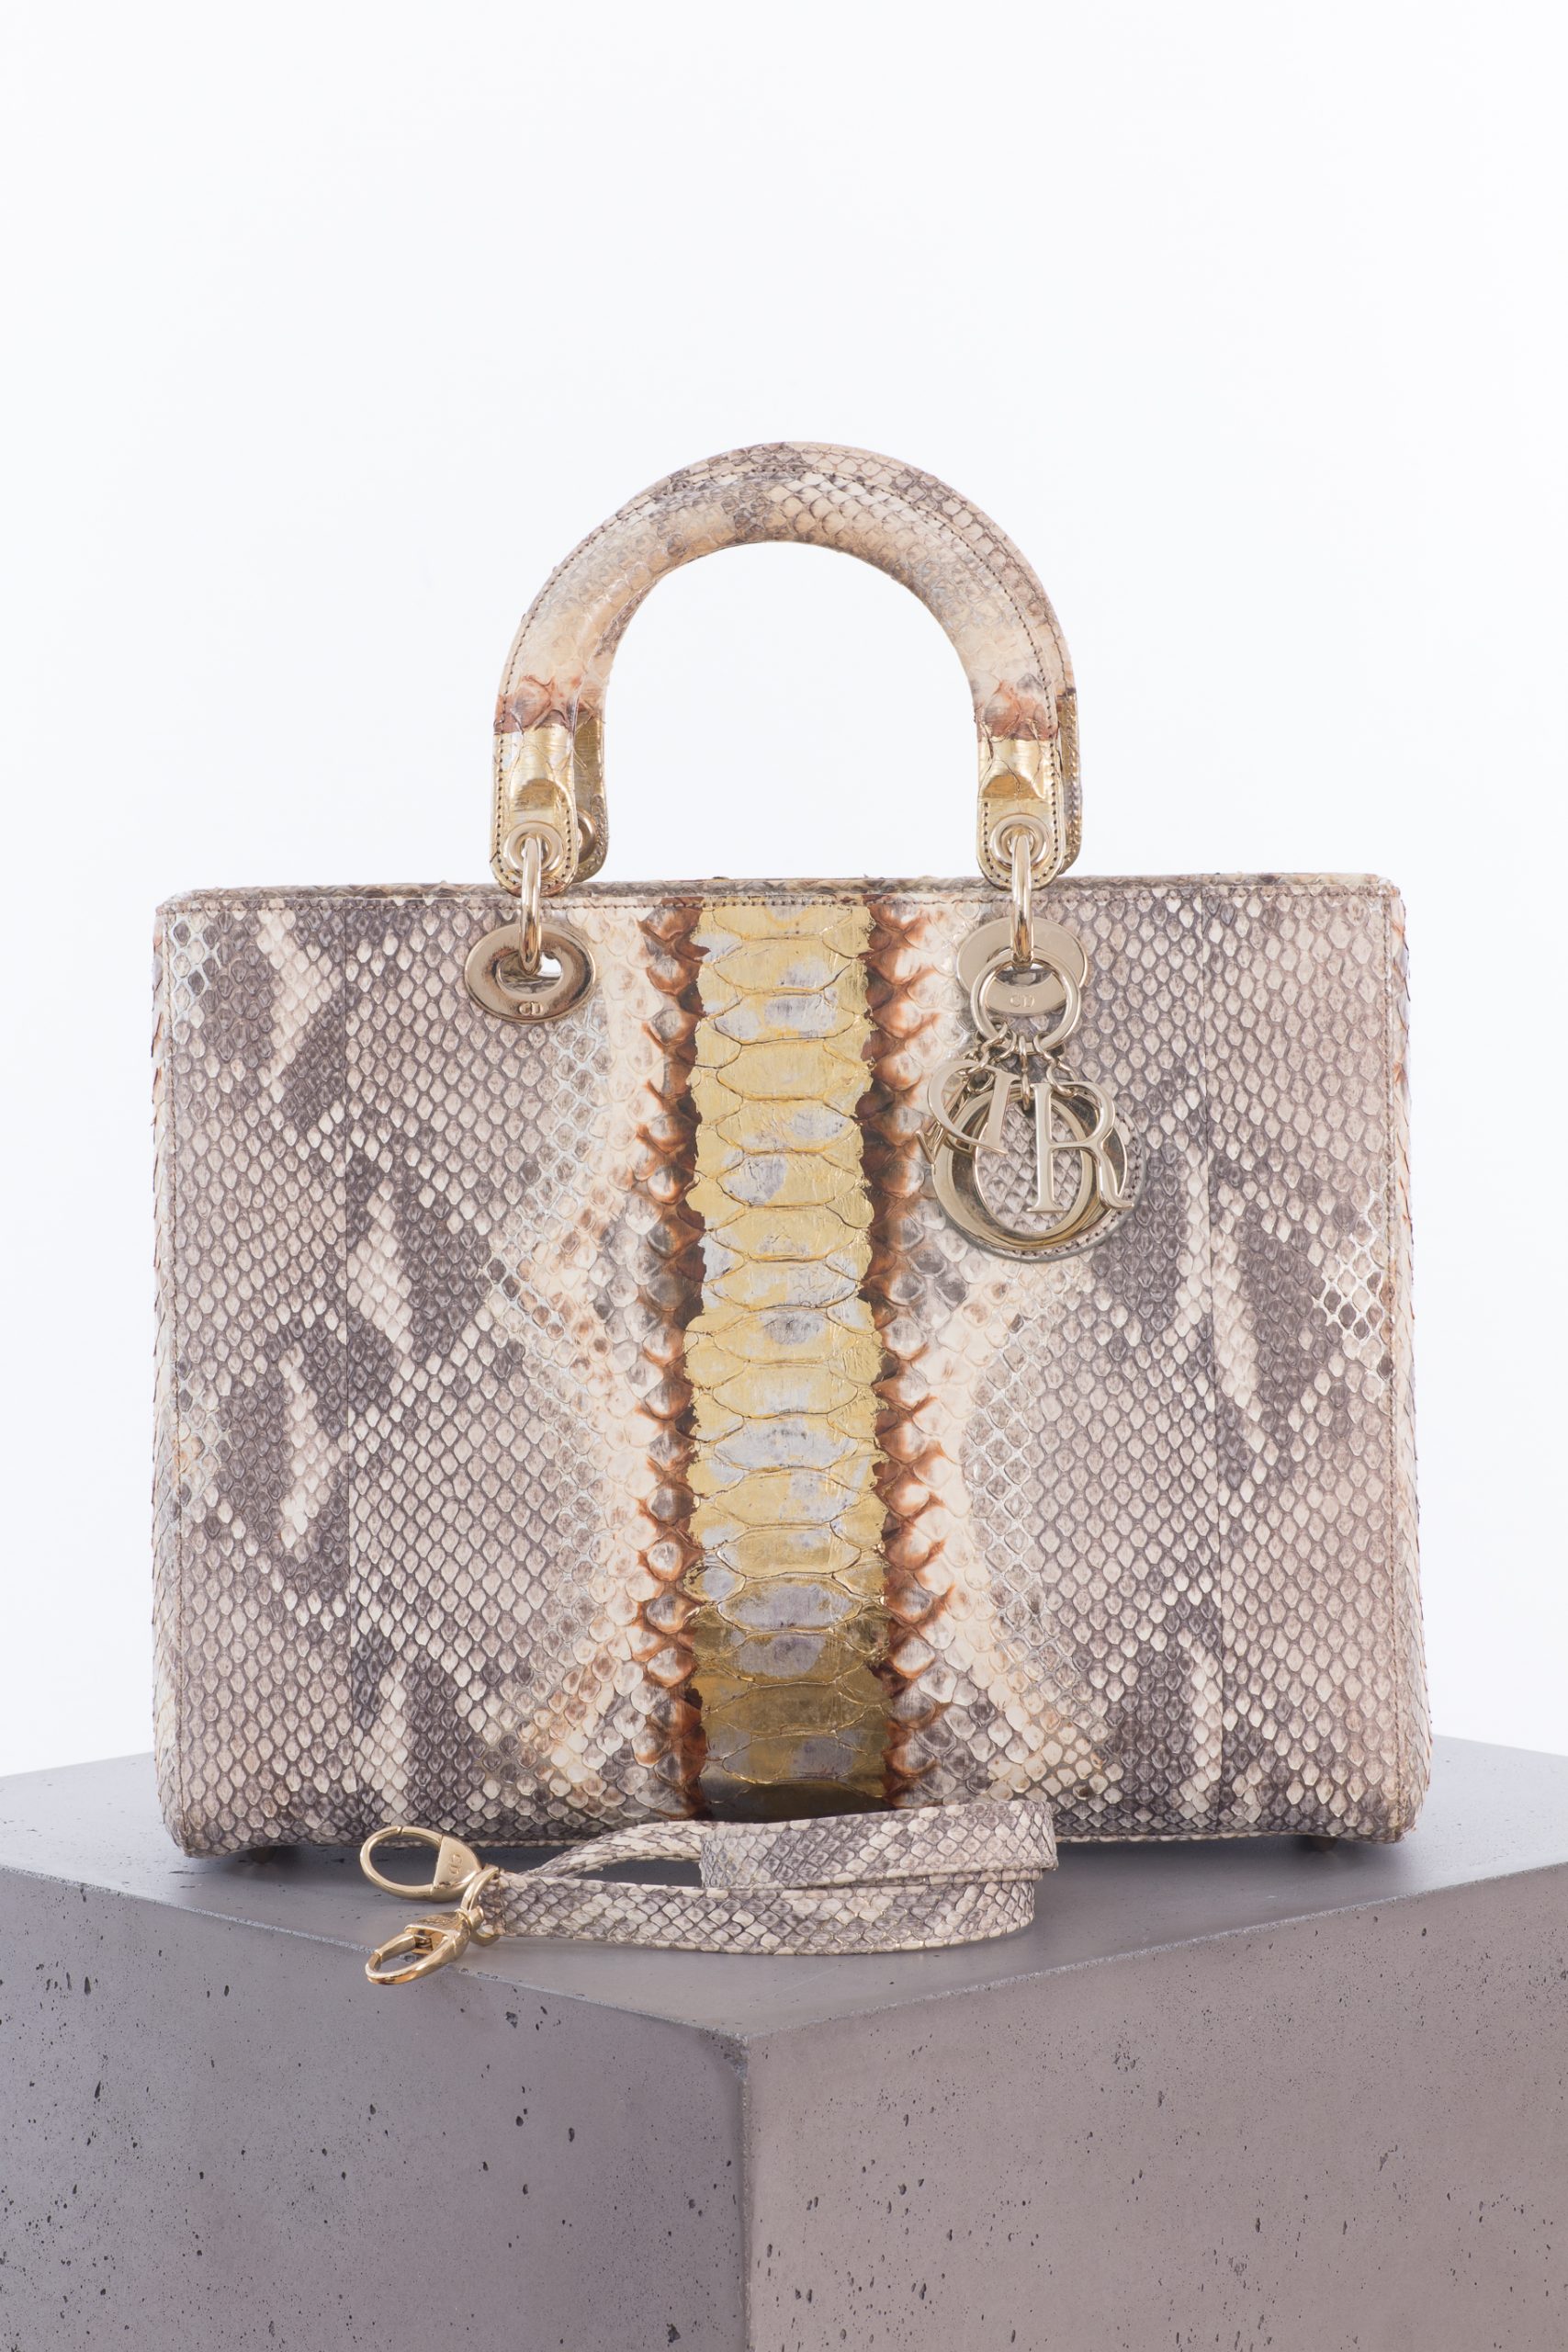 Christian Dior Lady Dior Python Bag